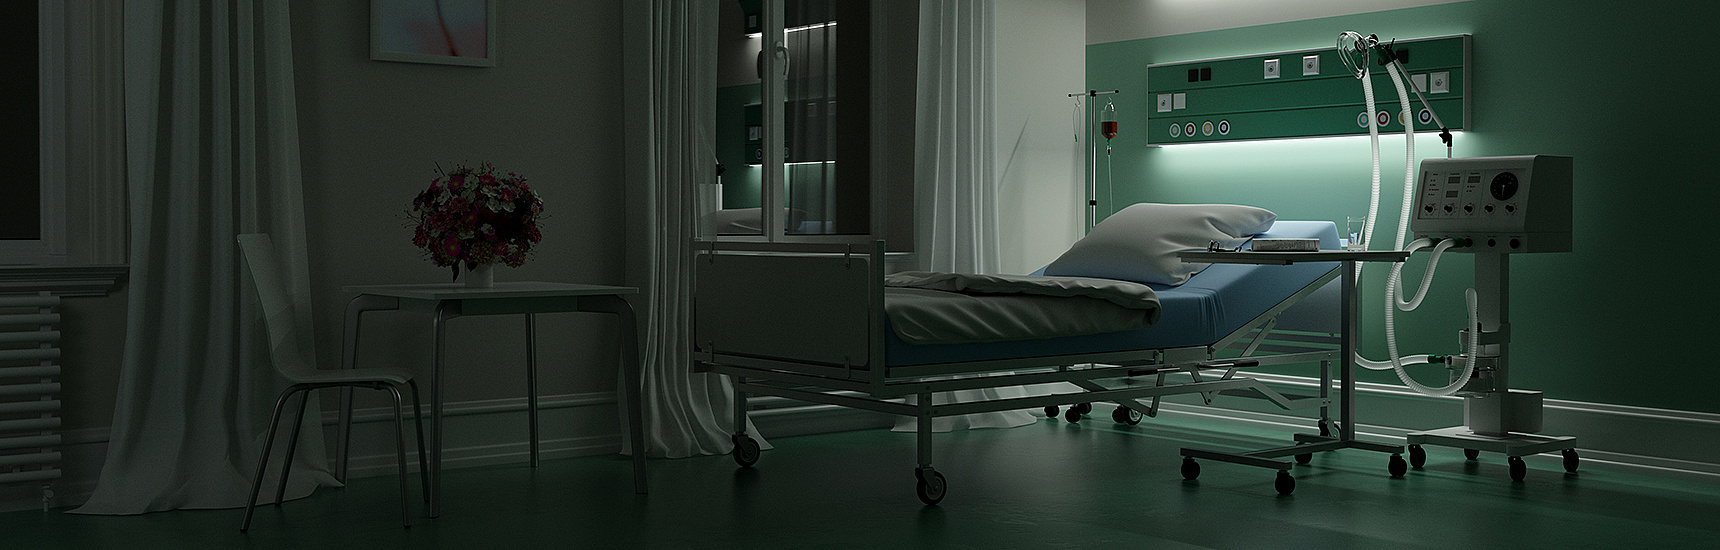 Leeres Krankenbett in einem dunklen Zimmer